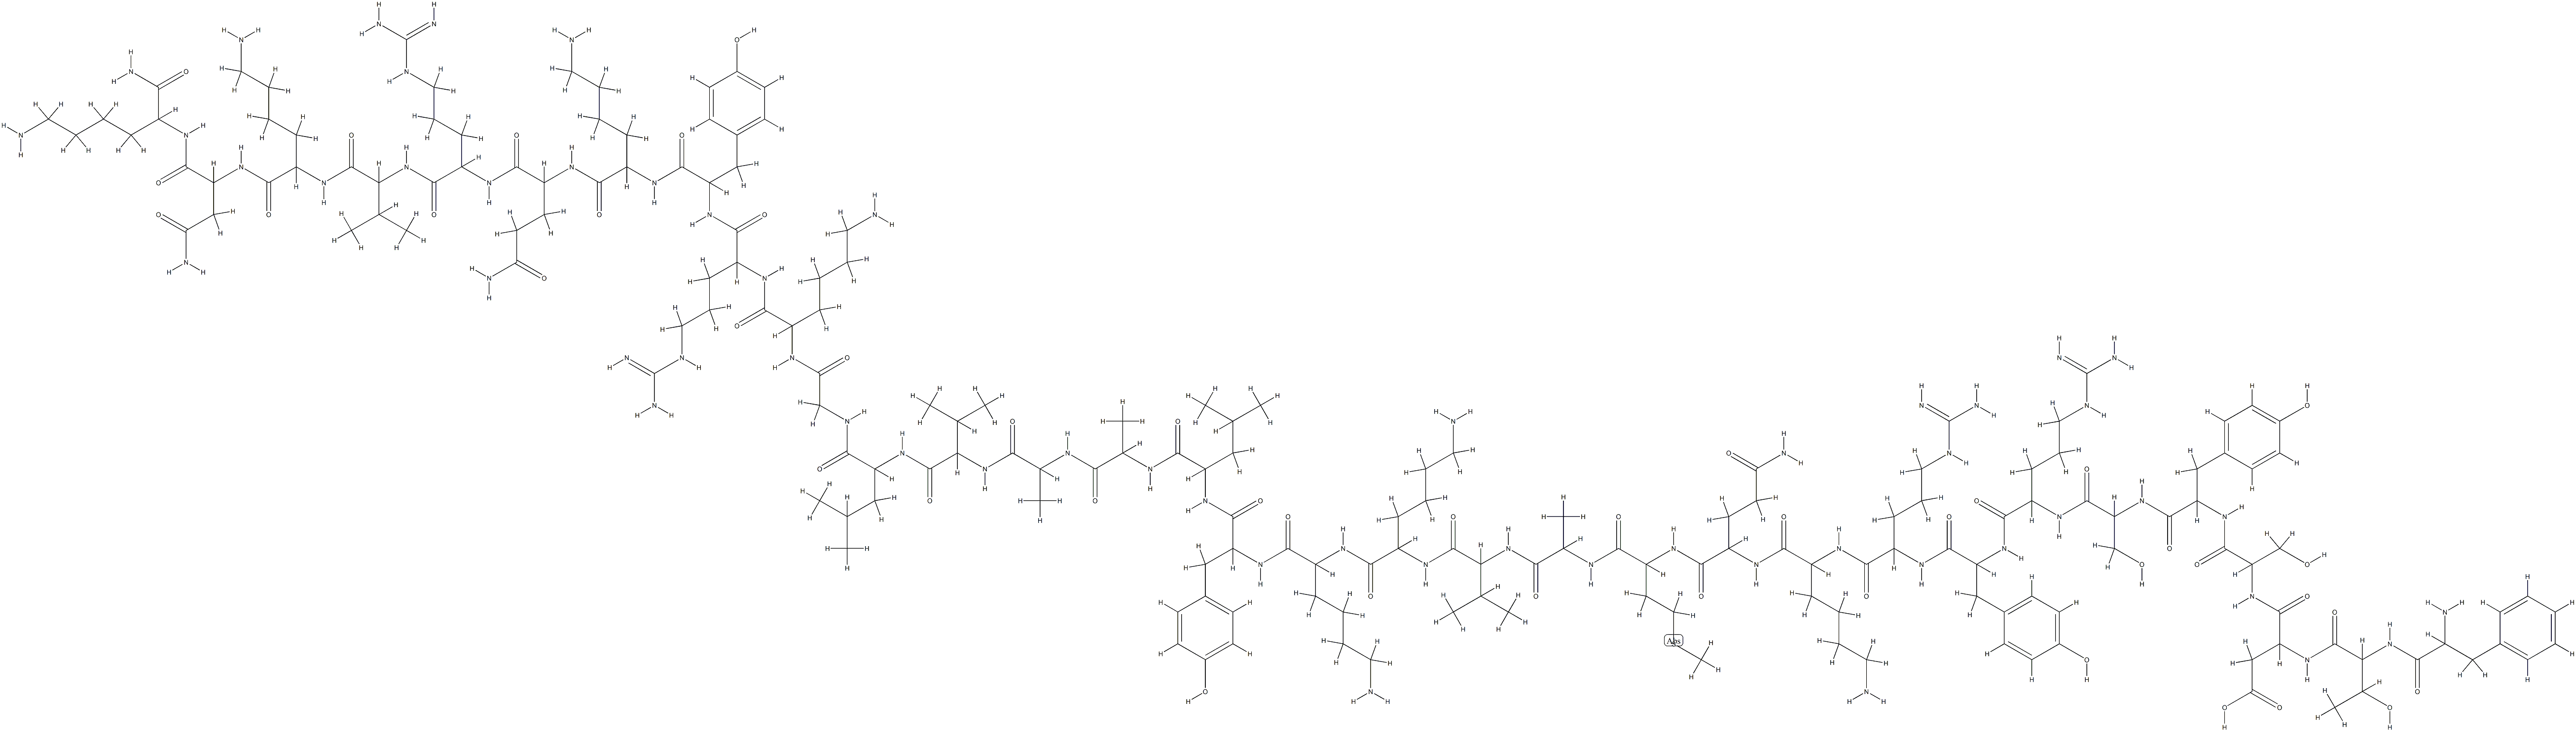 PACAP-38 (6-38) (ヒト, ニワトリ, マウス, ヒツジ, ブタ, ラット) 化学構造式